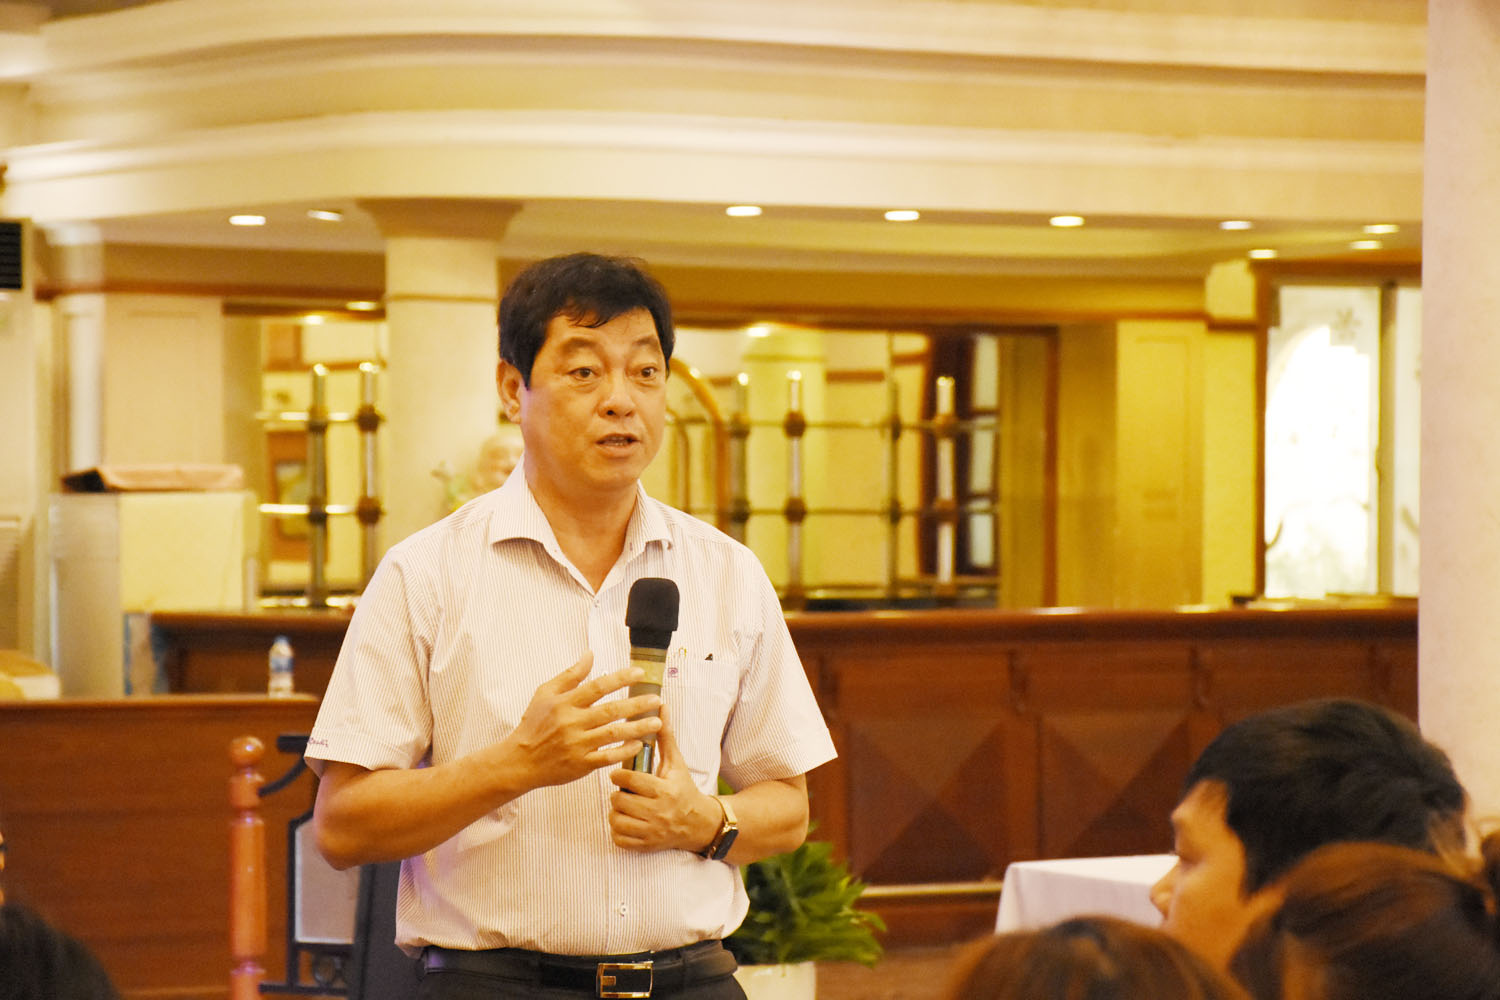 Ông Trần Đình Khoa, Ủy viên Ban Thường vụ Tỉnh uỷ, Bí thư Thành ủy Vũng Tàu trò chuyện với các DN.